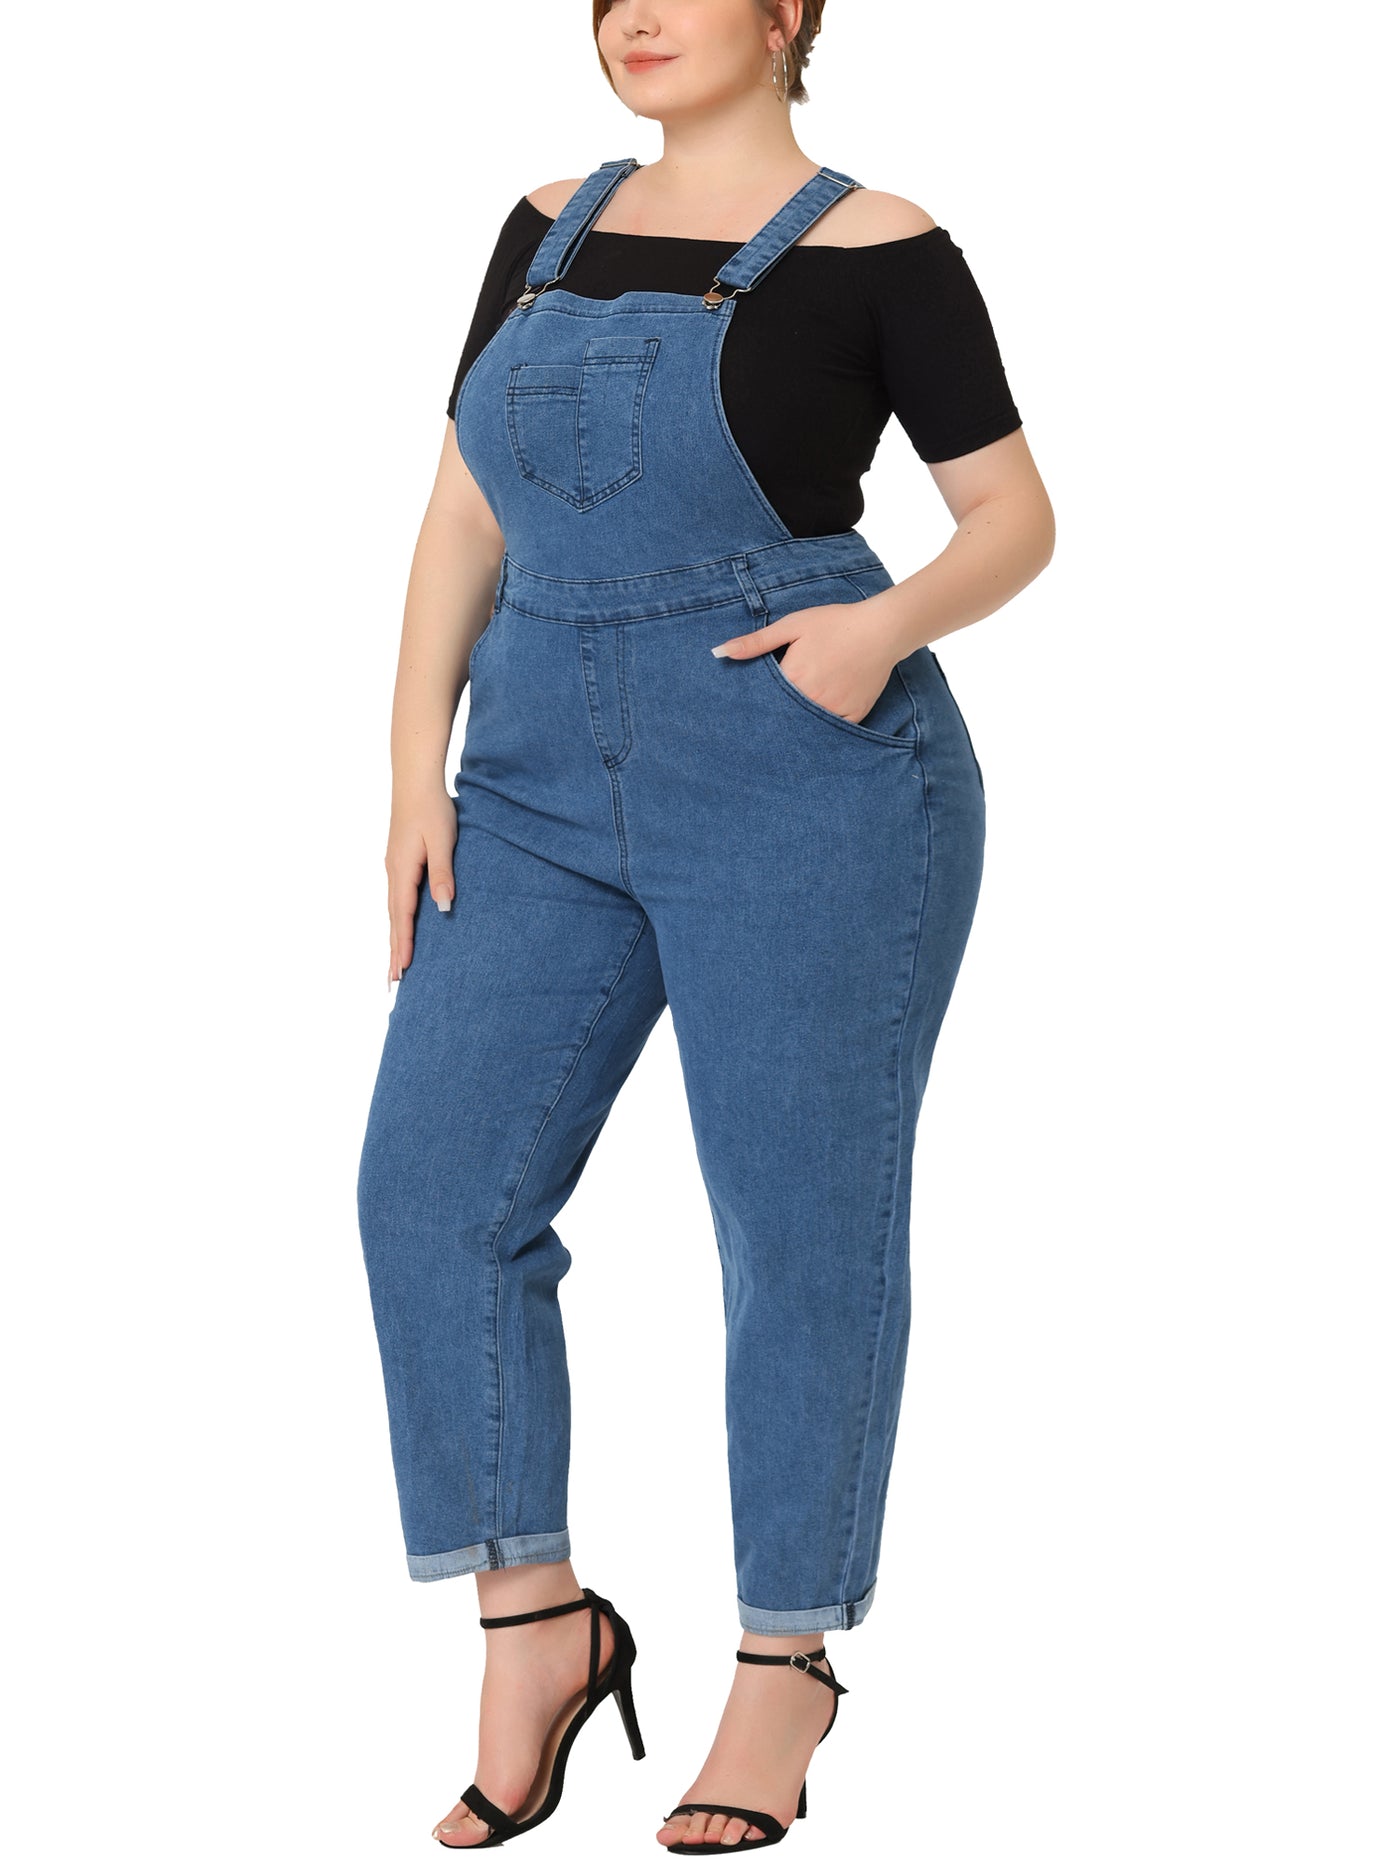 Bublédon Women's Plus Size Casual Stretch Adjustable Denim Bib Overalls Jeans Pants Jumpsuits